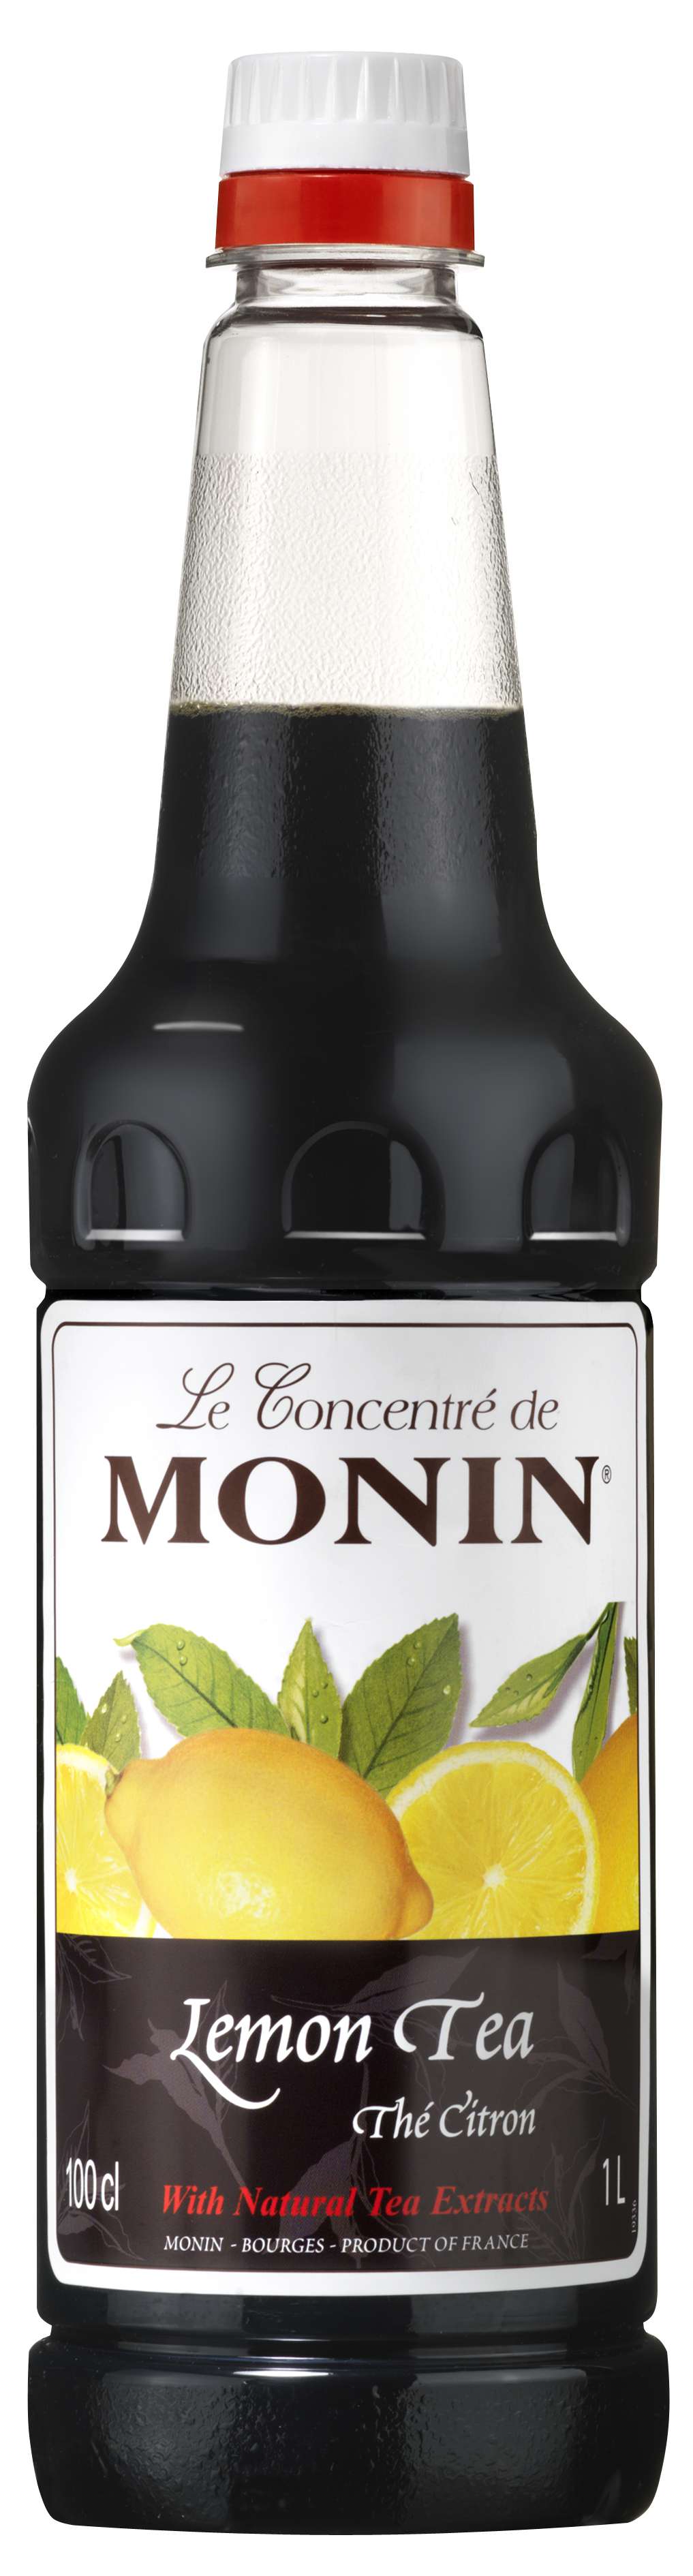 Monin Lemon Tea concentrate 1L